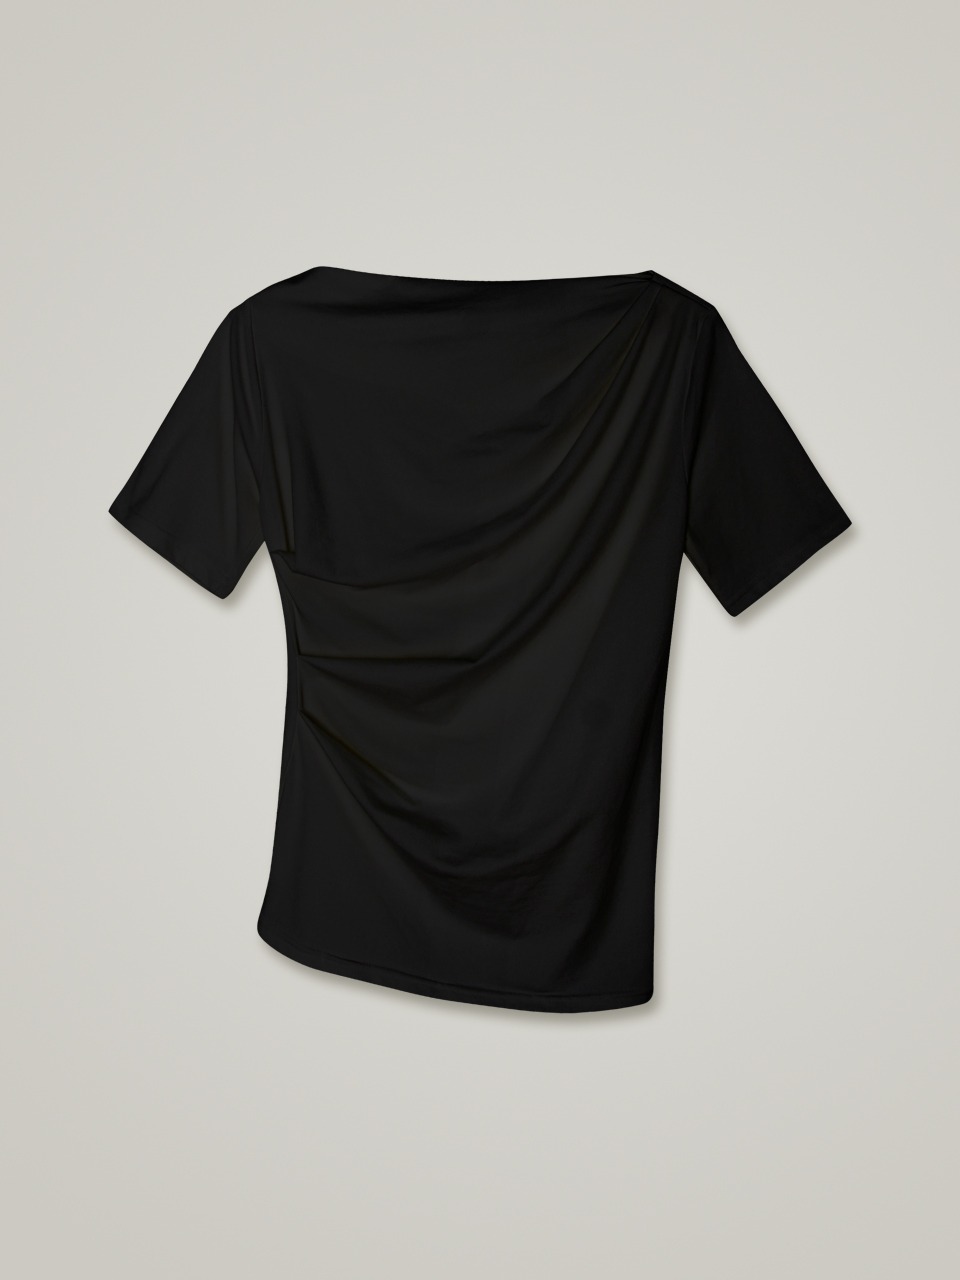 comos 682 pin tuck off shoulder T-shirt (black)